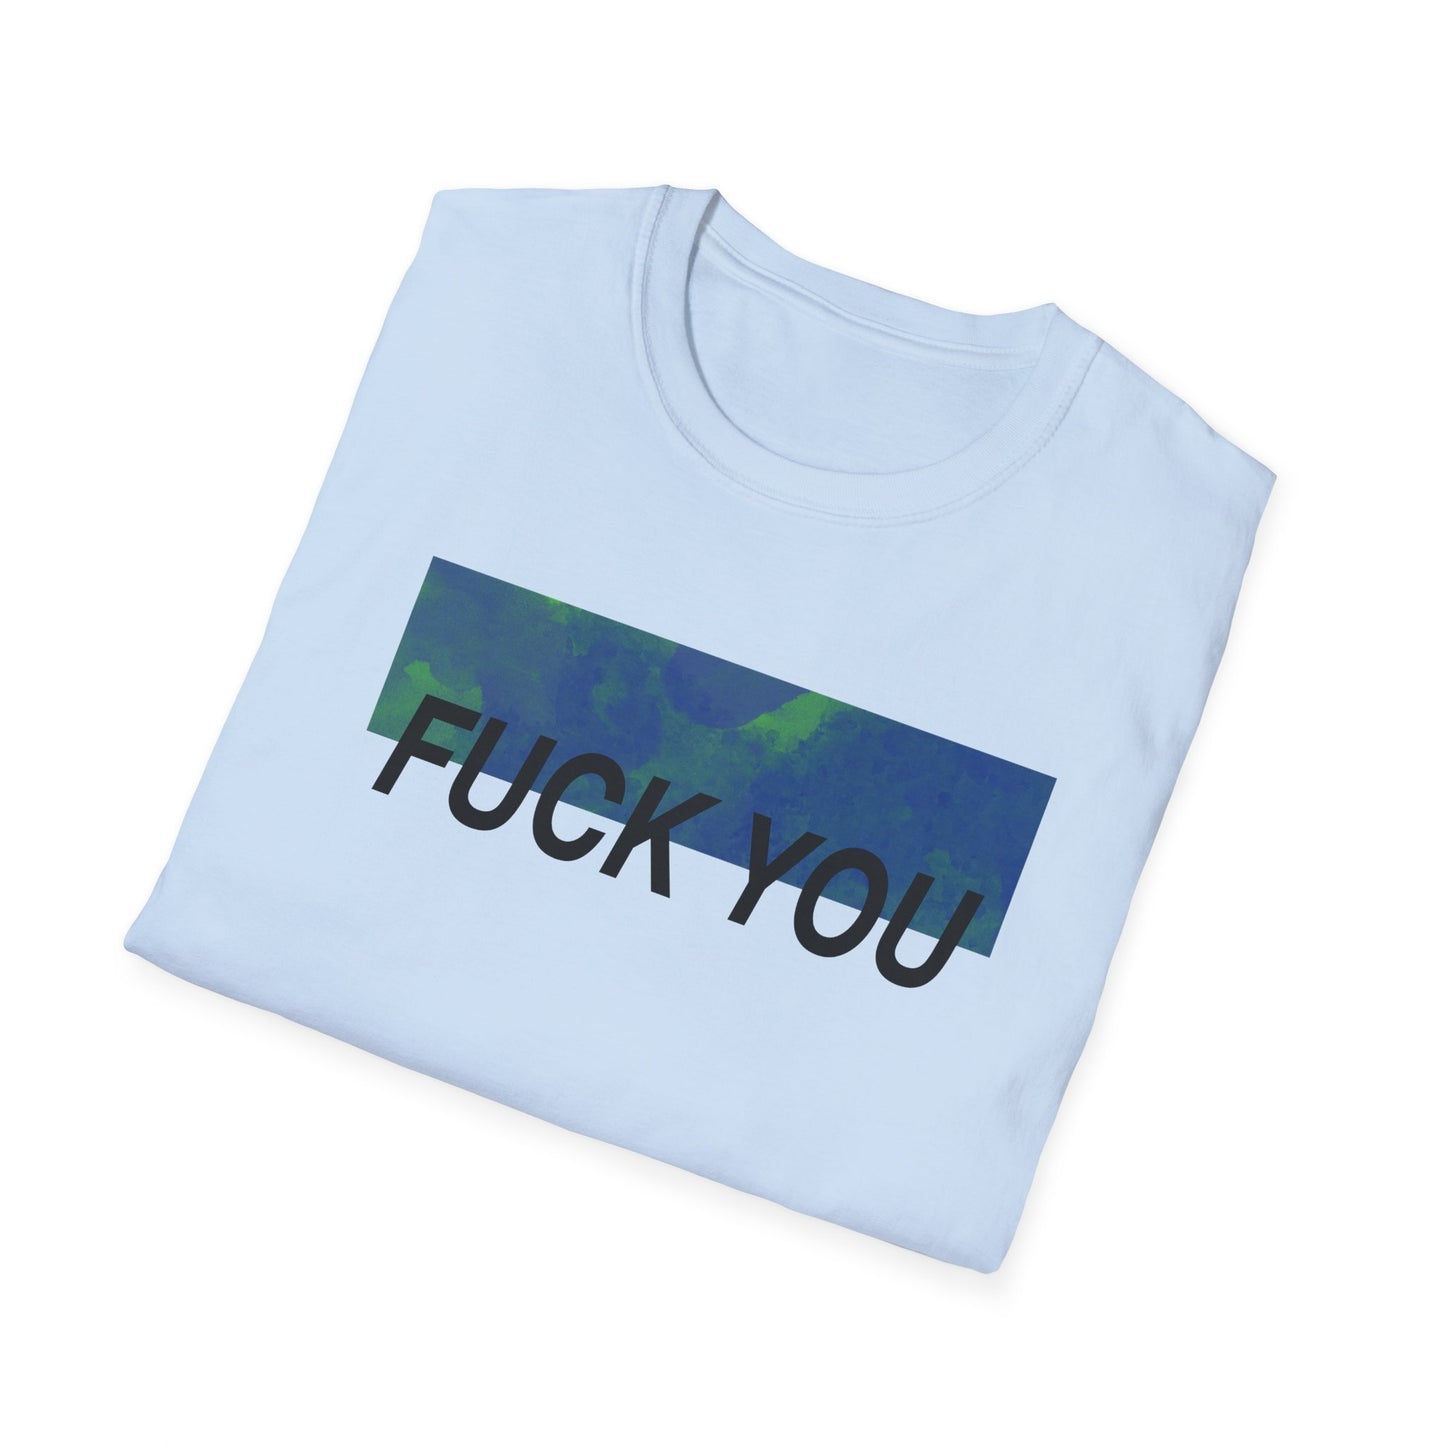 Fuck You Shirt